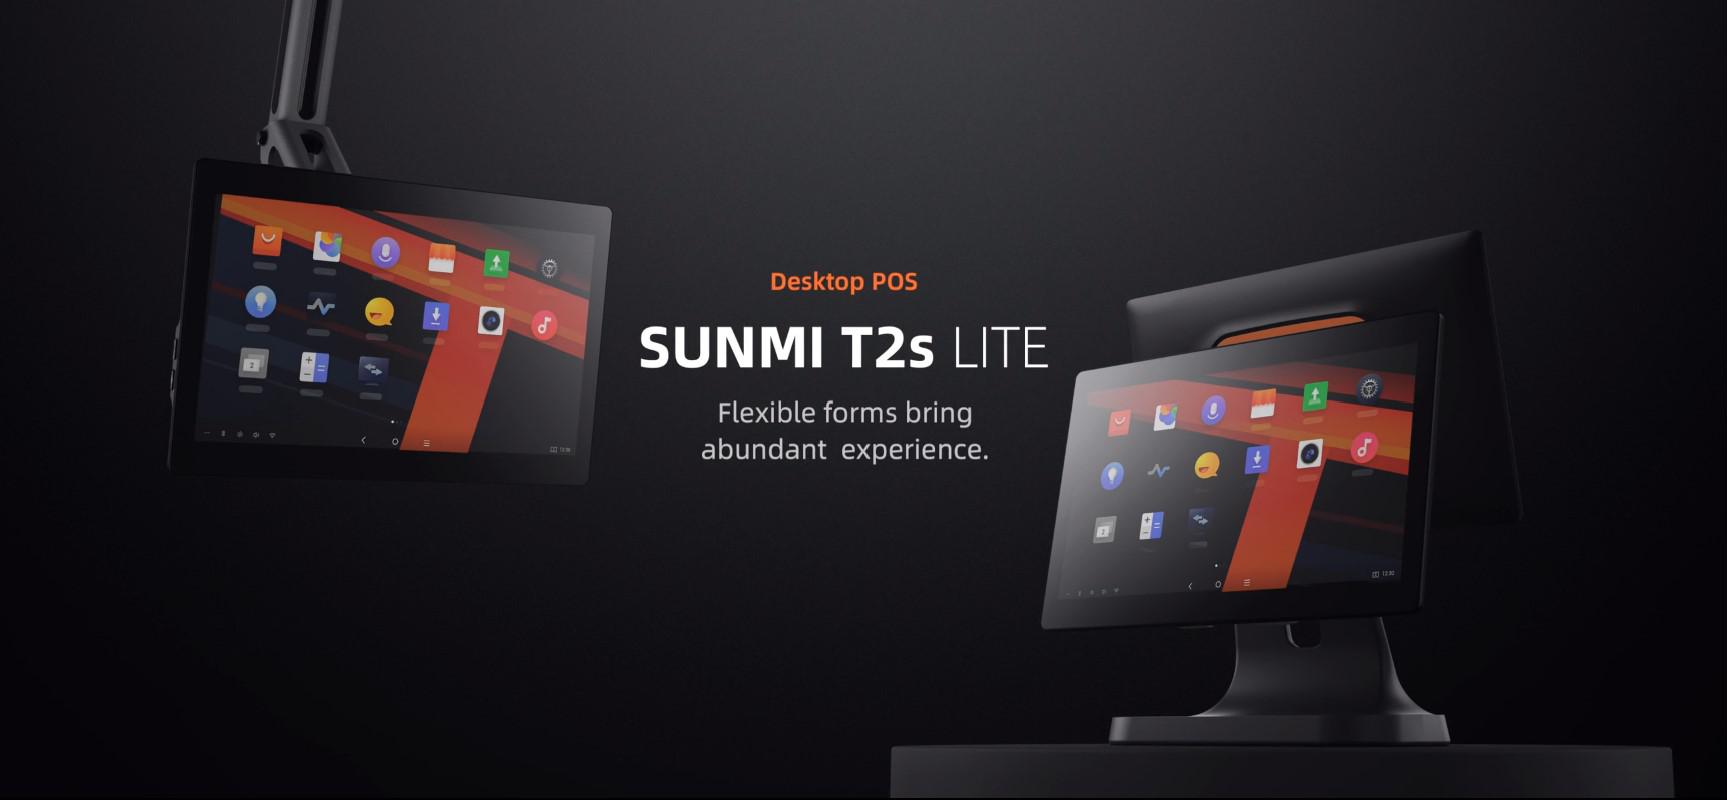 SUNMI DESKTOP POS SYSTEM L1571 T2s LITE EN (15.6", 4GB + 64GB, WiFi, EU Adapter)